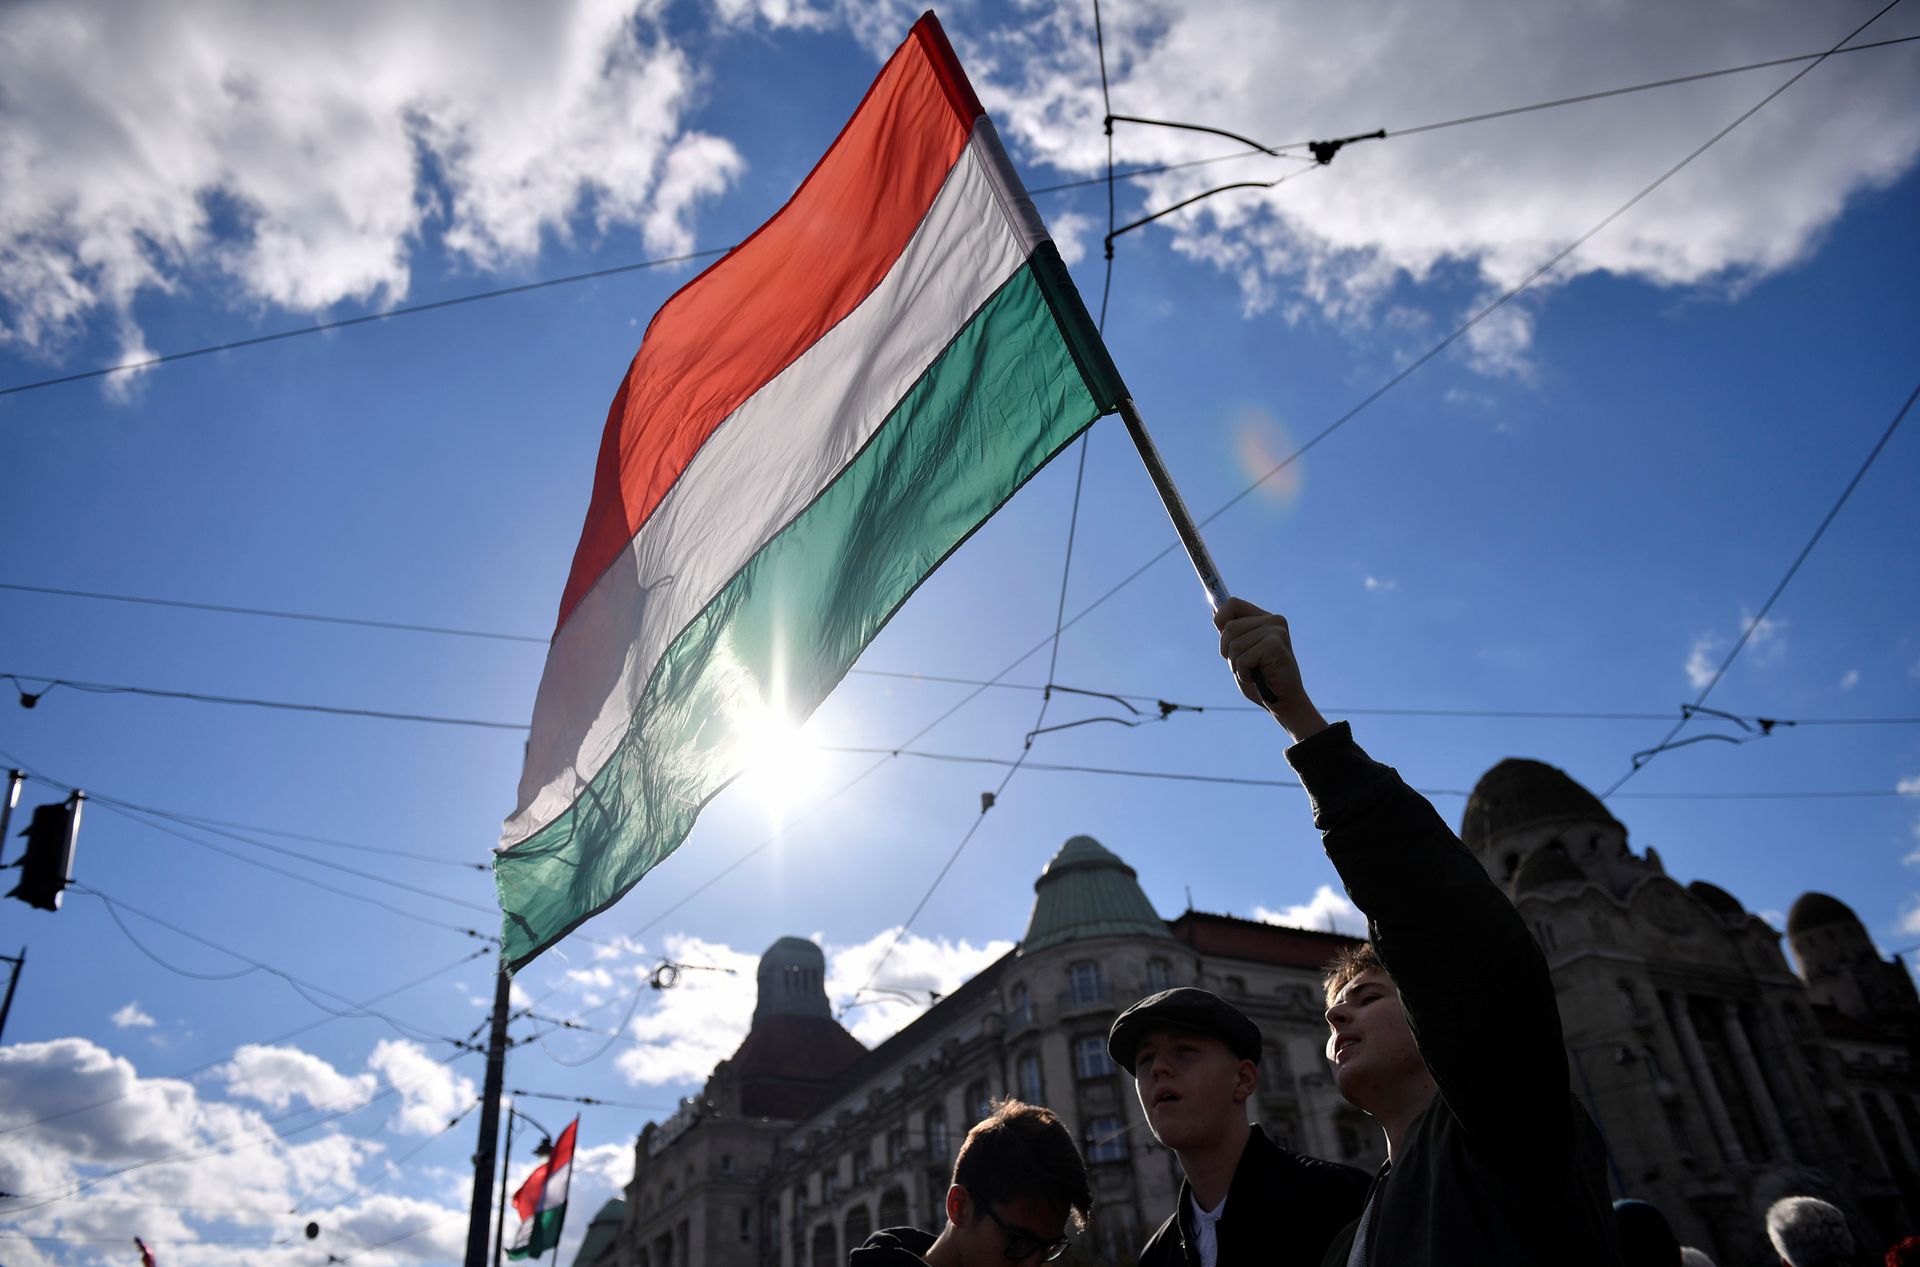 Pháp lý lá cờ Hungary: Với pháp lý lá cờ Hungary, một số quy định mới vừa được quốc hội Hungary thông qua nhằm bảo vệ quyền lợi của lá cờ quốc gia. Các cơ quan nhà nước và doanh nghiệp phải tuân theo luật pháp về việc sử dụng, sản xuất, bán và quảng bá lá cờ Hungary. Năm 2024, bạn sẽ cảm thấy bất ngờ khi biết một lá cờ có thể có những thông tin pháp lý cụ thể.